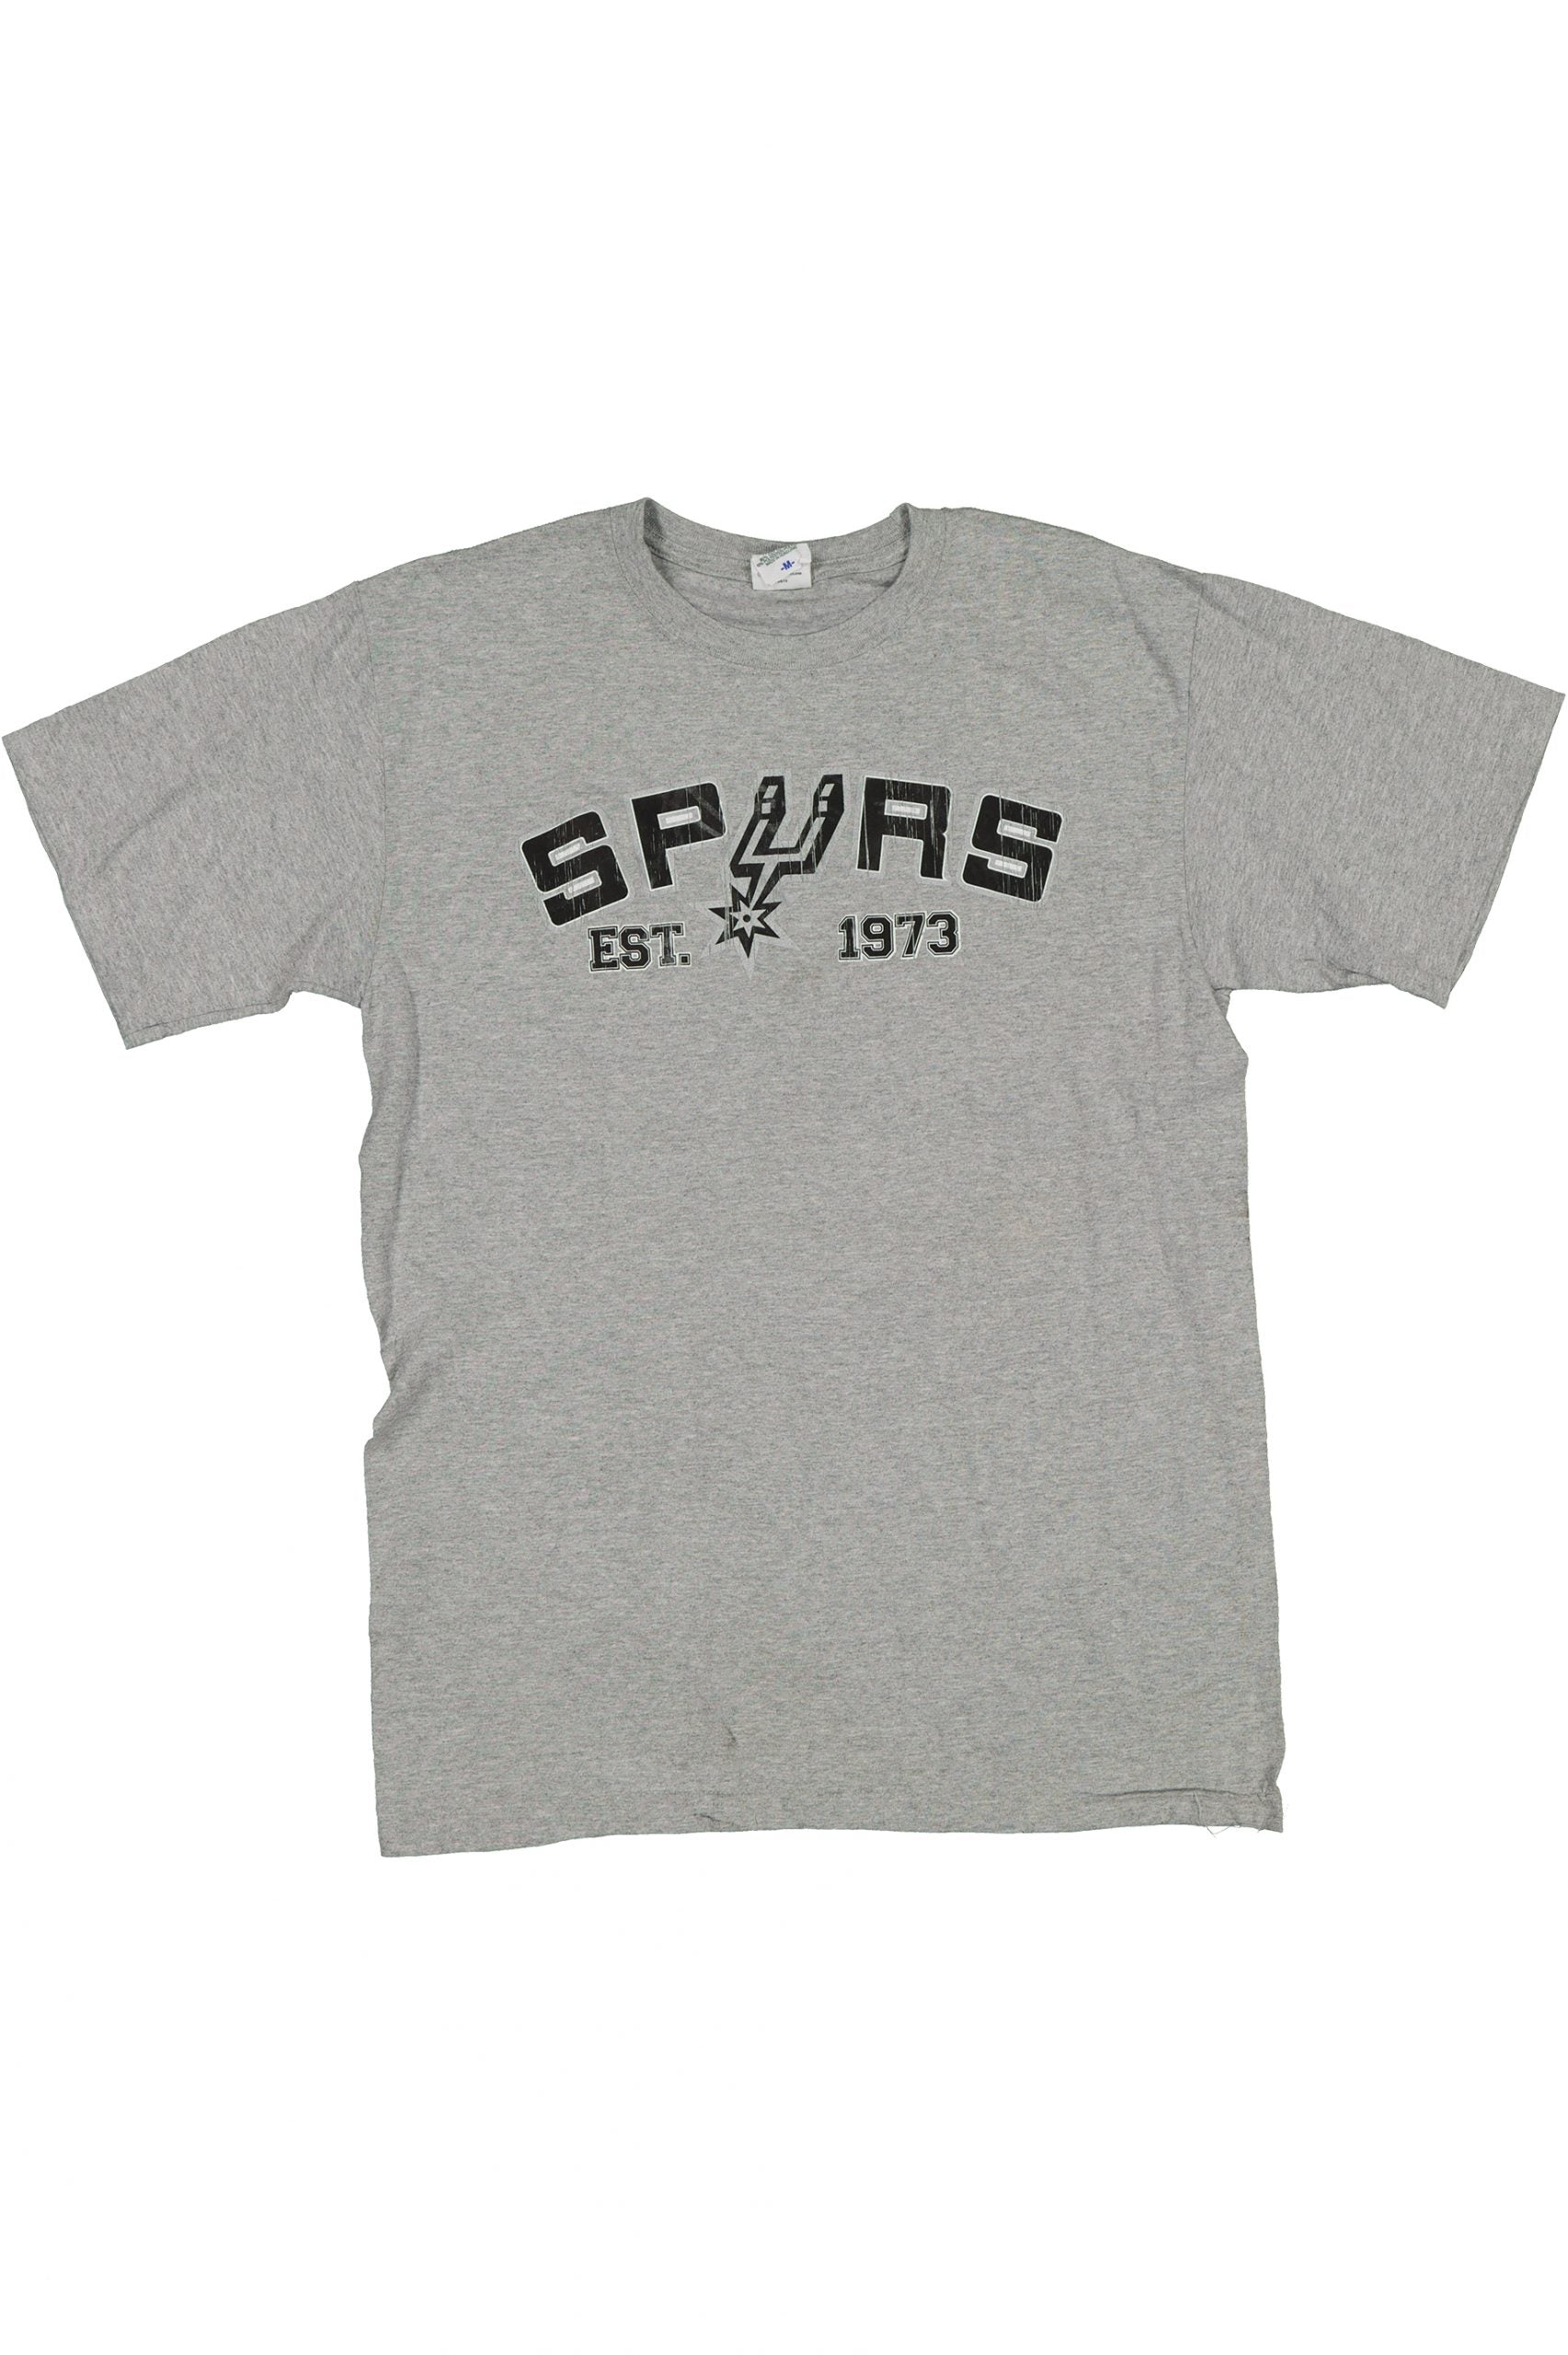 Vintage LA Sports Tshirt - Medium